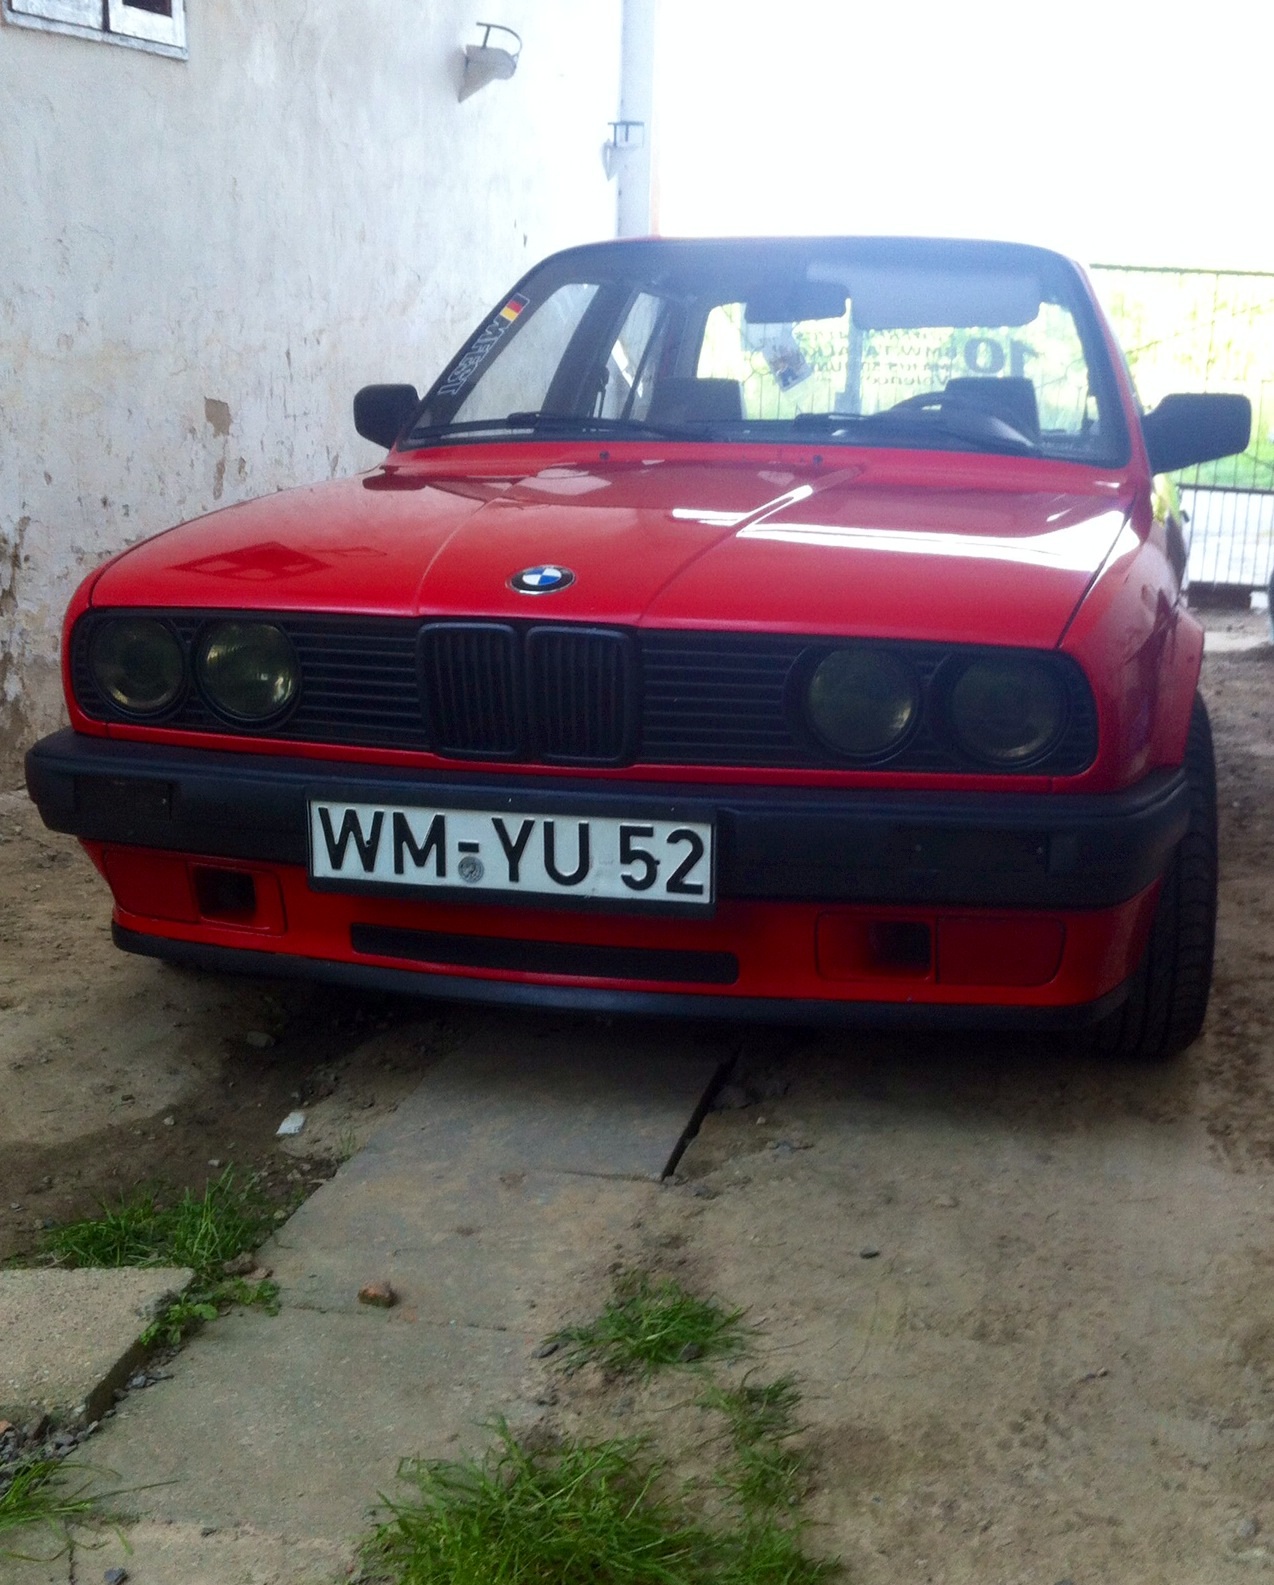 BMW E30 328i